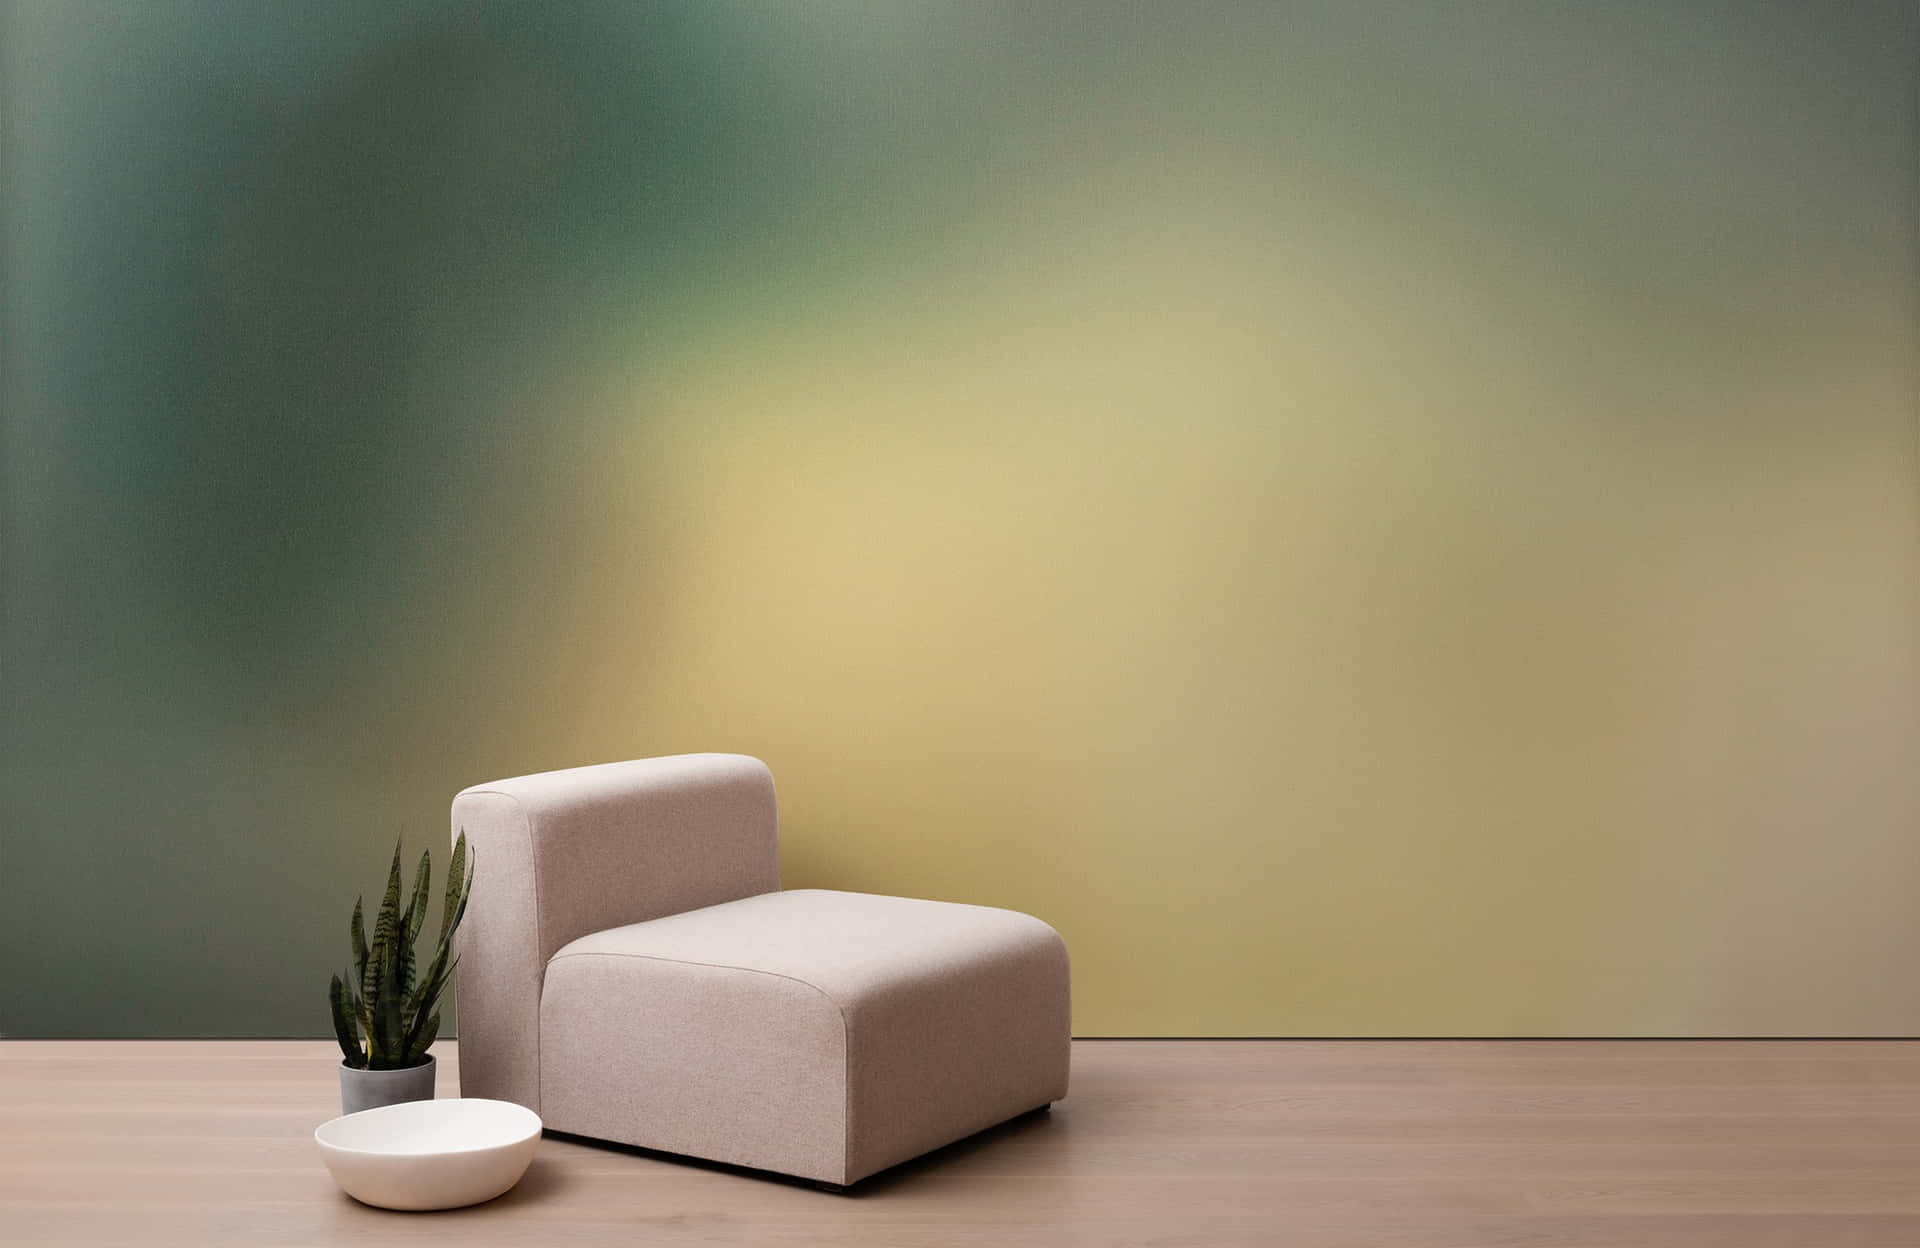 Minimalist Modern Interior Design Background